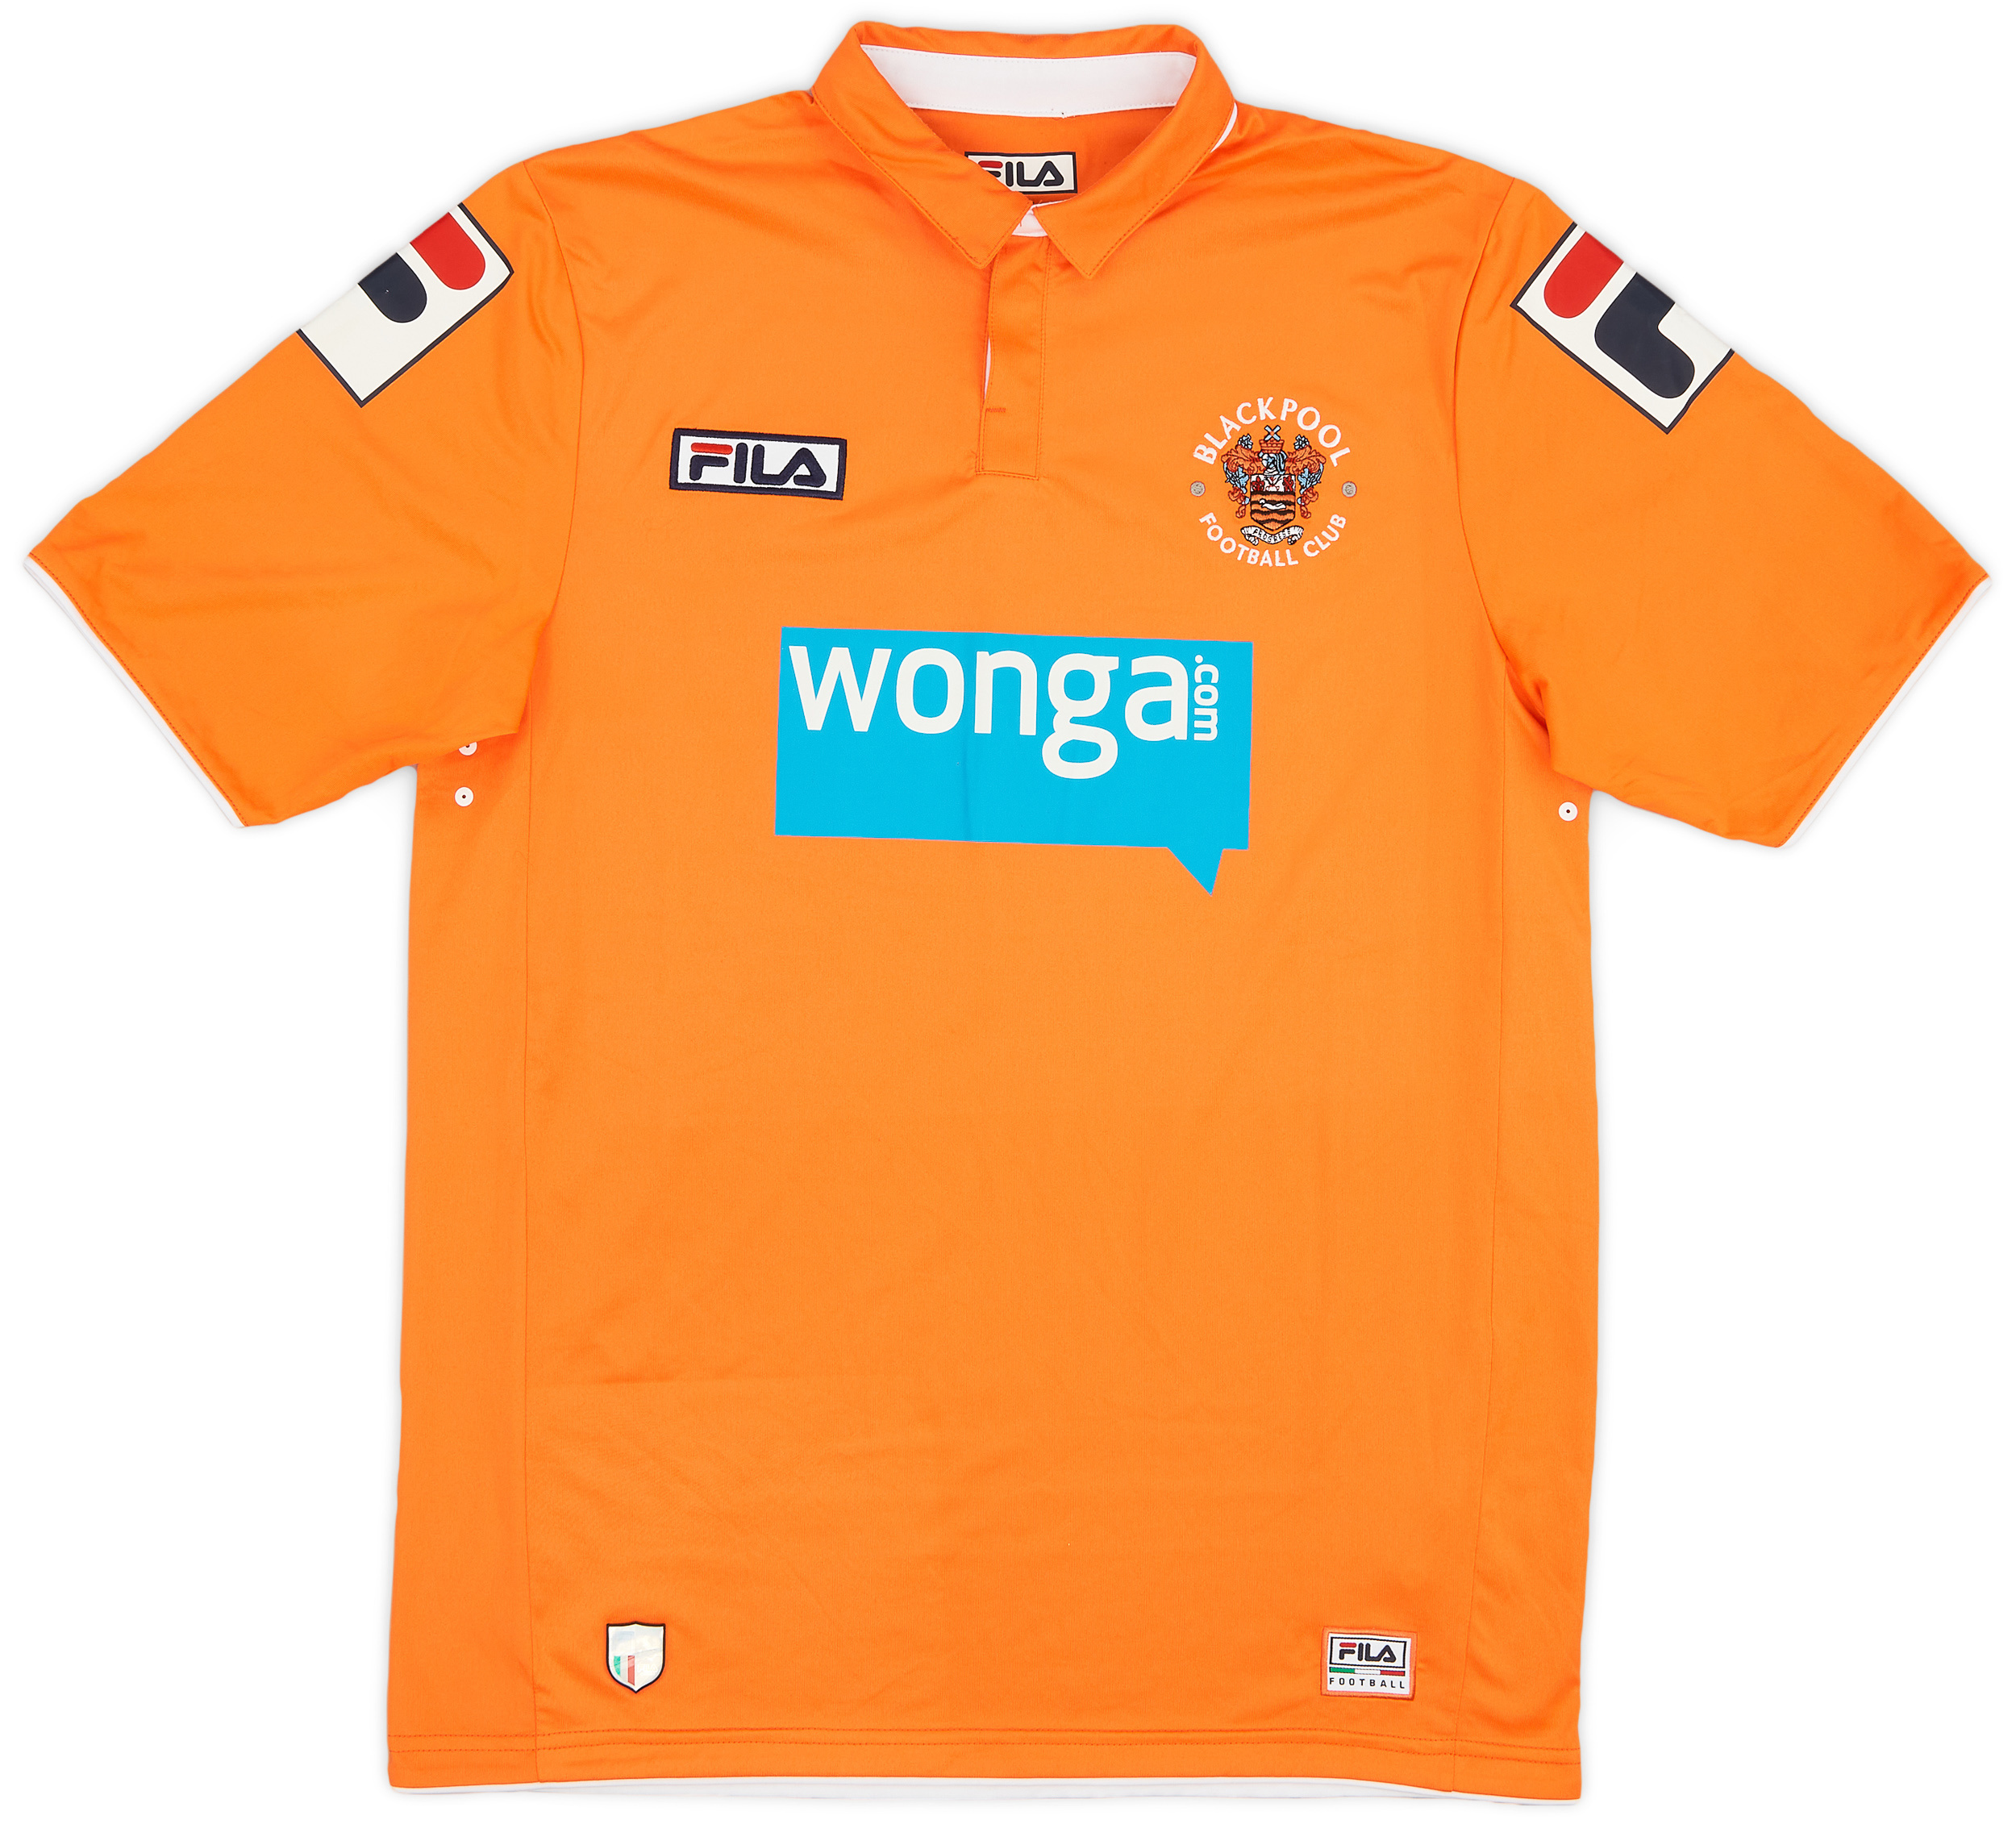 2011-13 Blackpool Home Shirt - 9/10 - ()